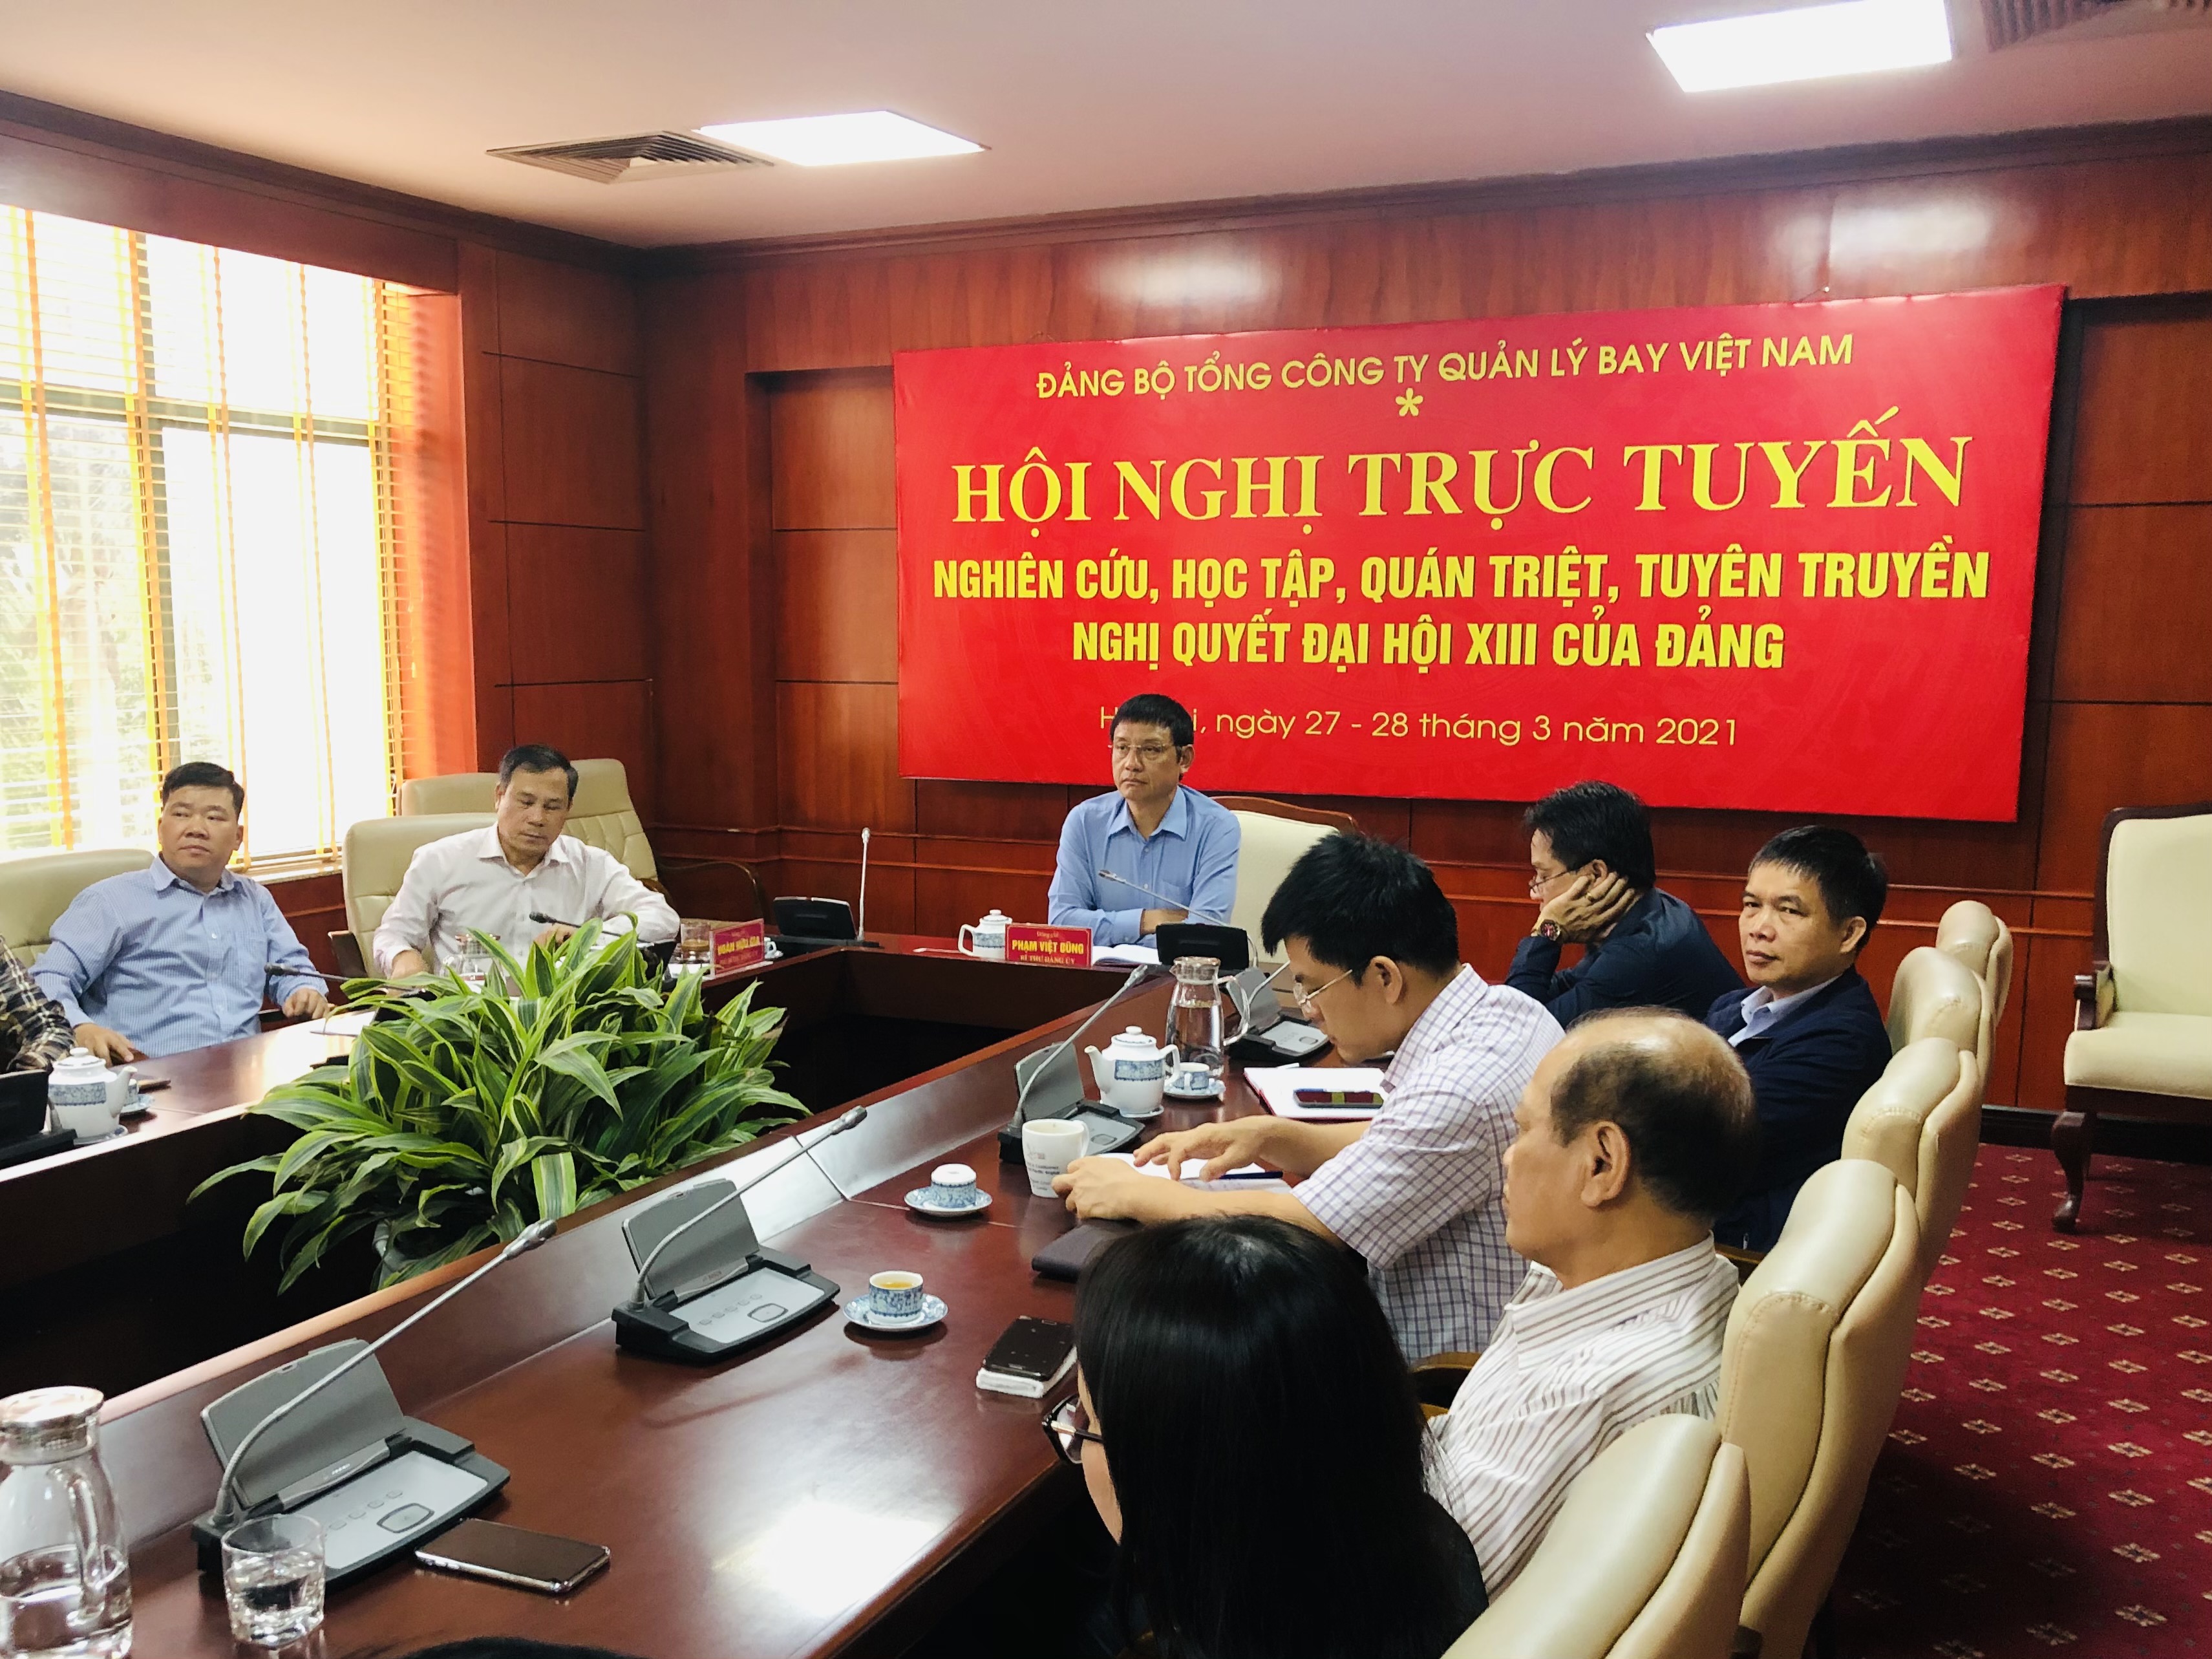 Đảng ủy Tổng công ty Quản lý bay Việt Nam tham dự Hội nghị trực tuyến học tập, quán triệt triển khai thực hiện Nghị quyết Đại hội lần thứ XIII của Đảng